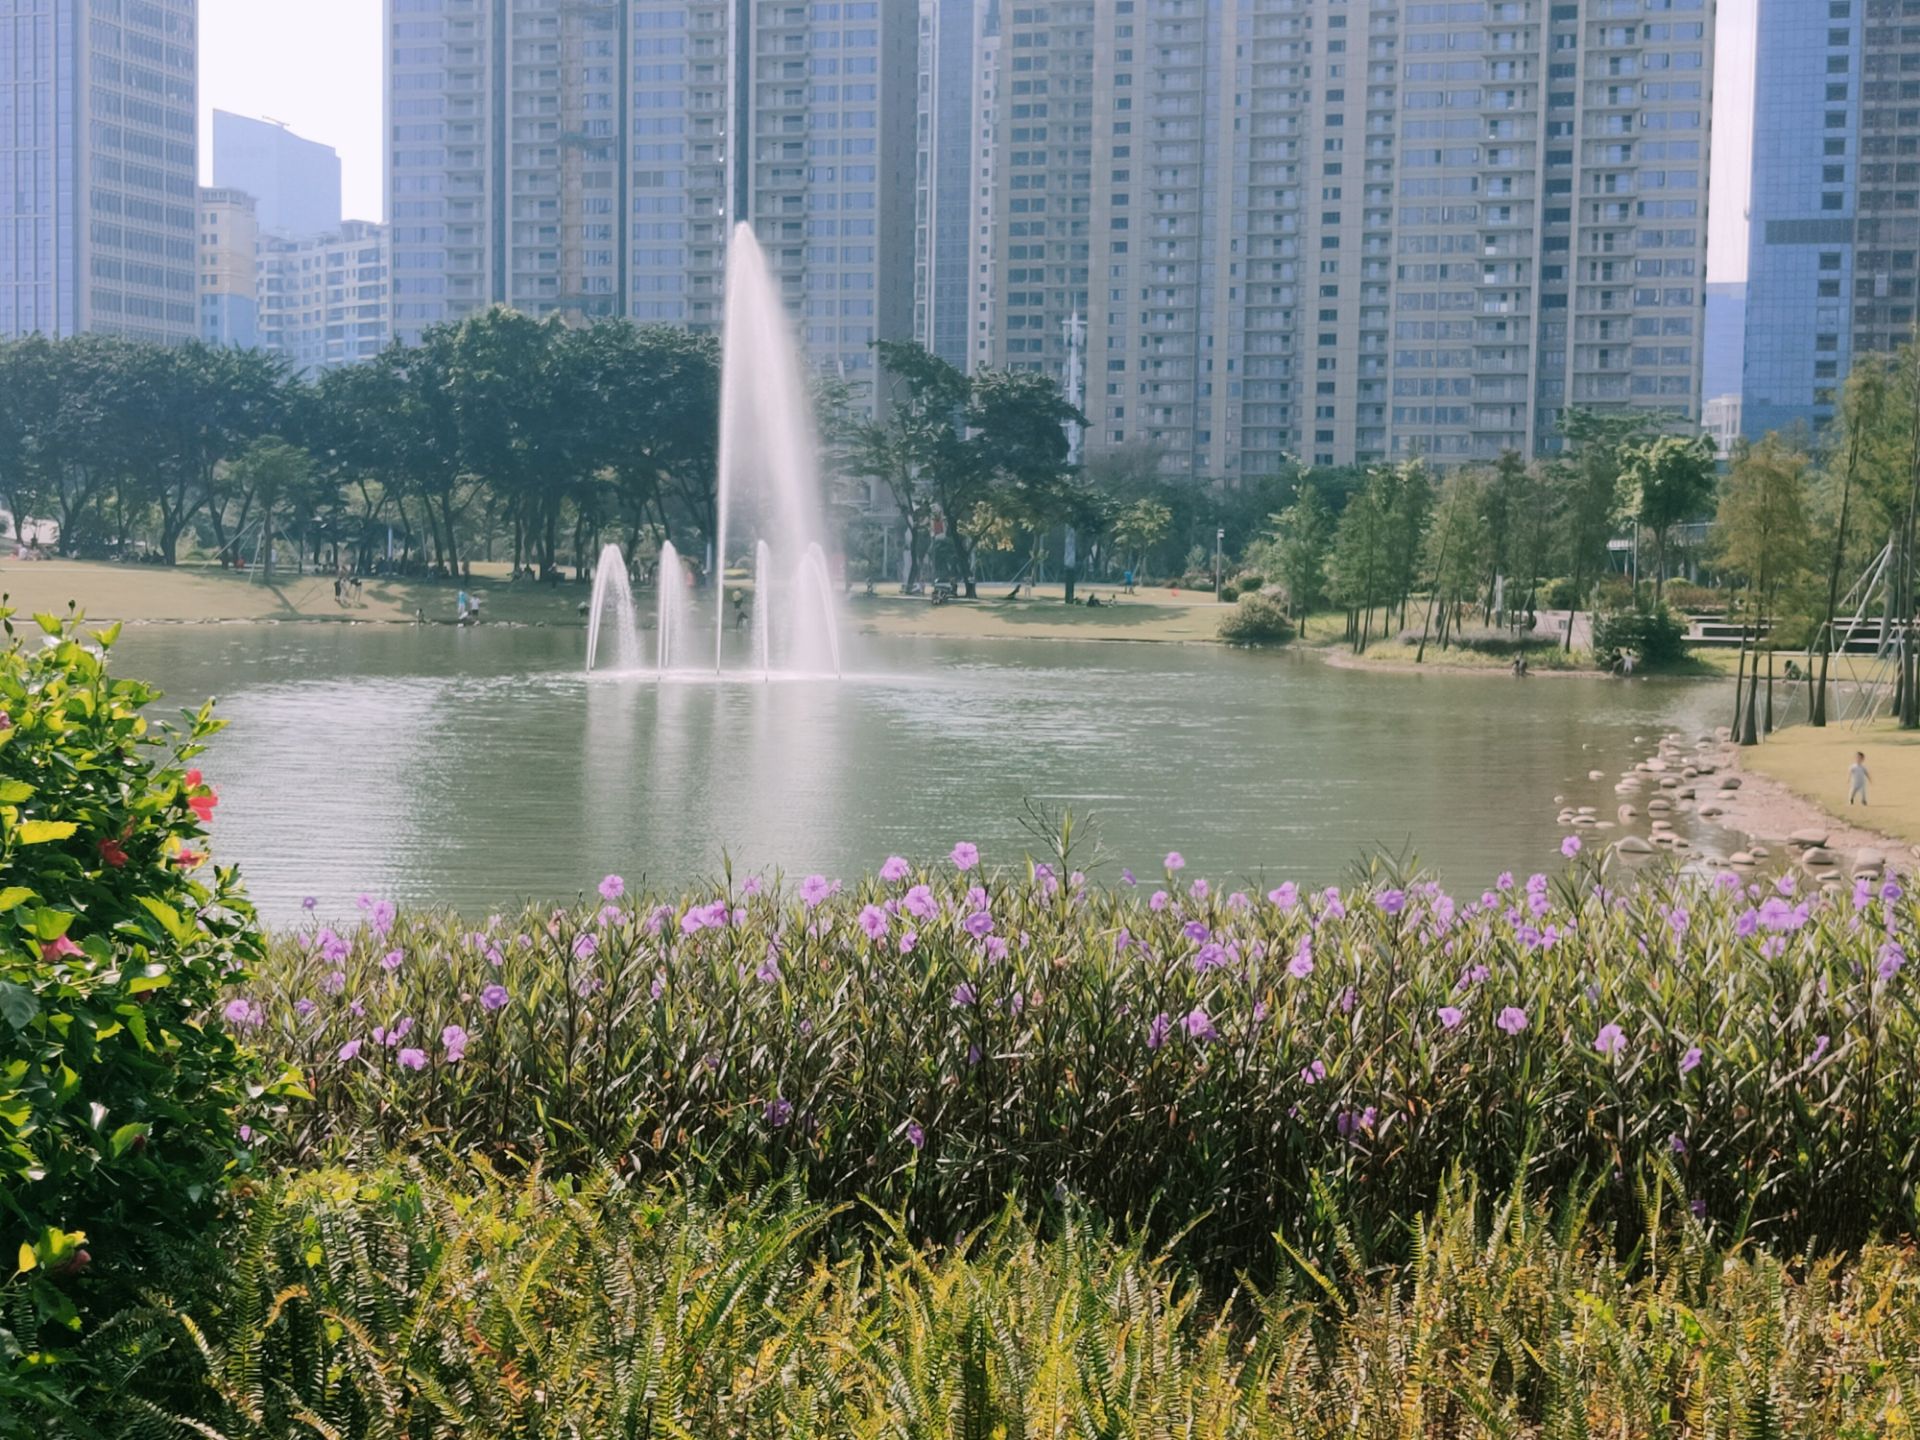 深圳香蜜公园风景-中关村在线摄影论坛